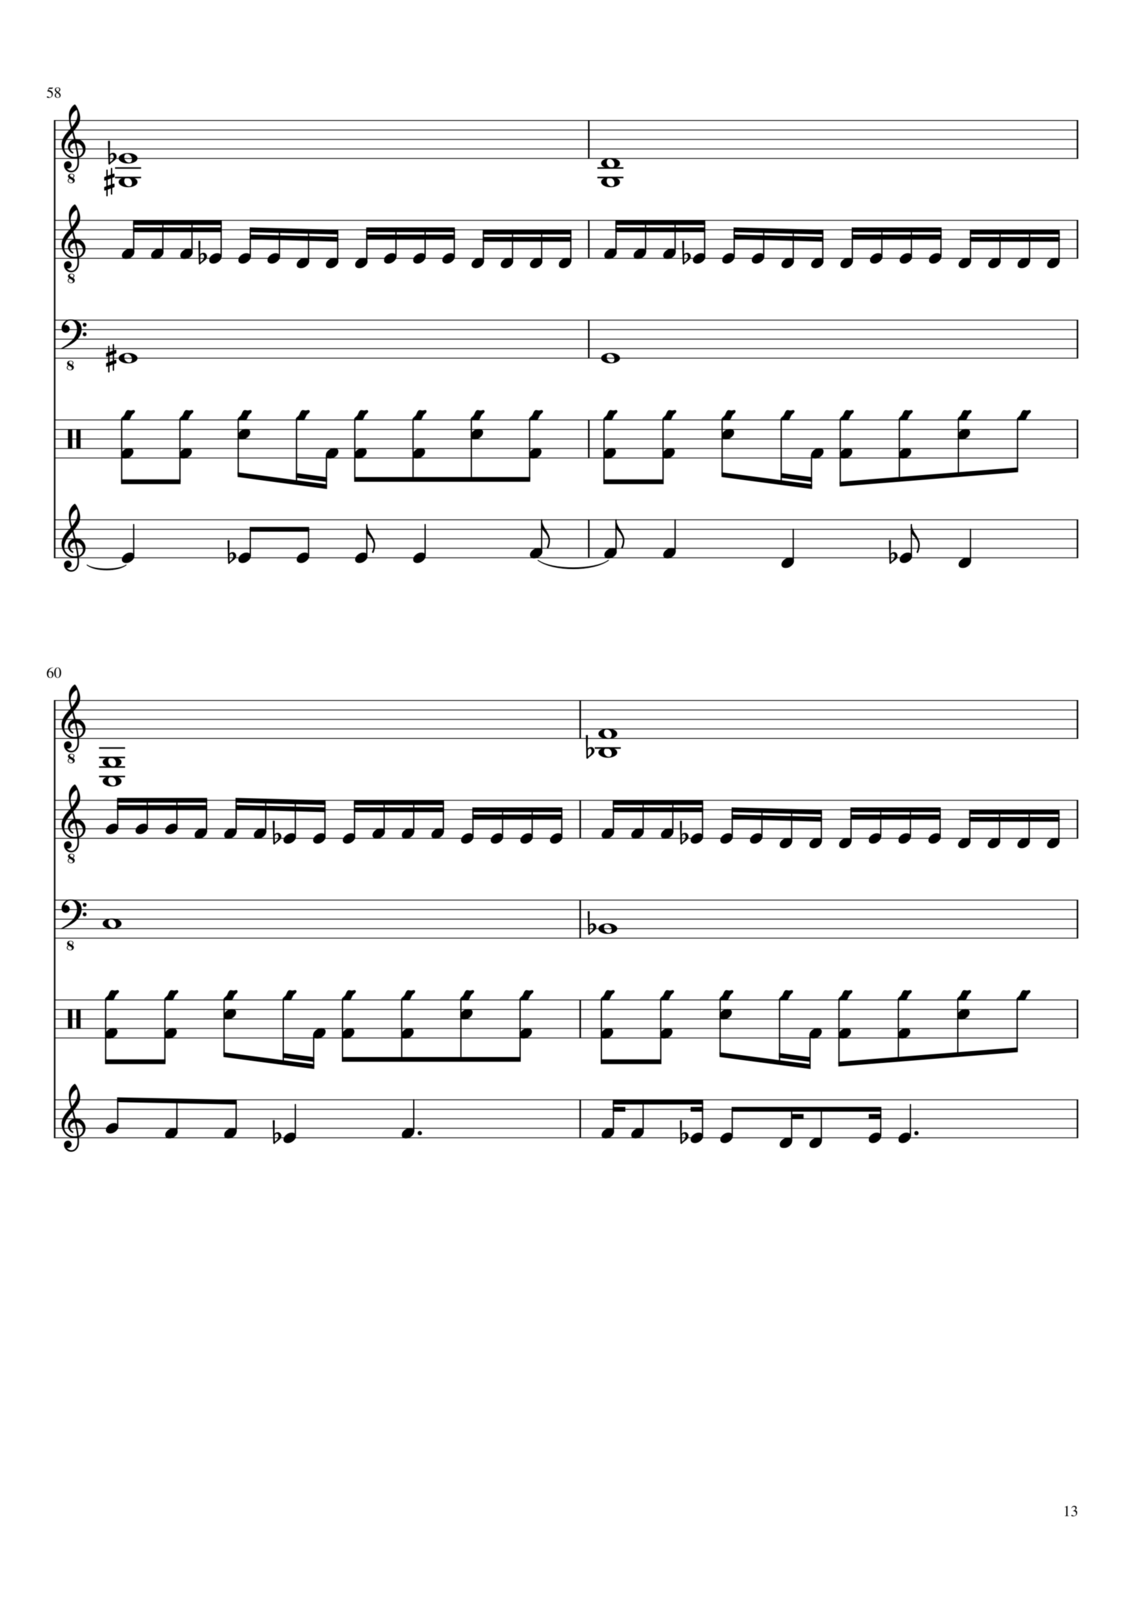 Vechnaya molodost slide, Image 15